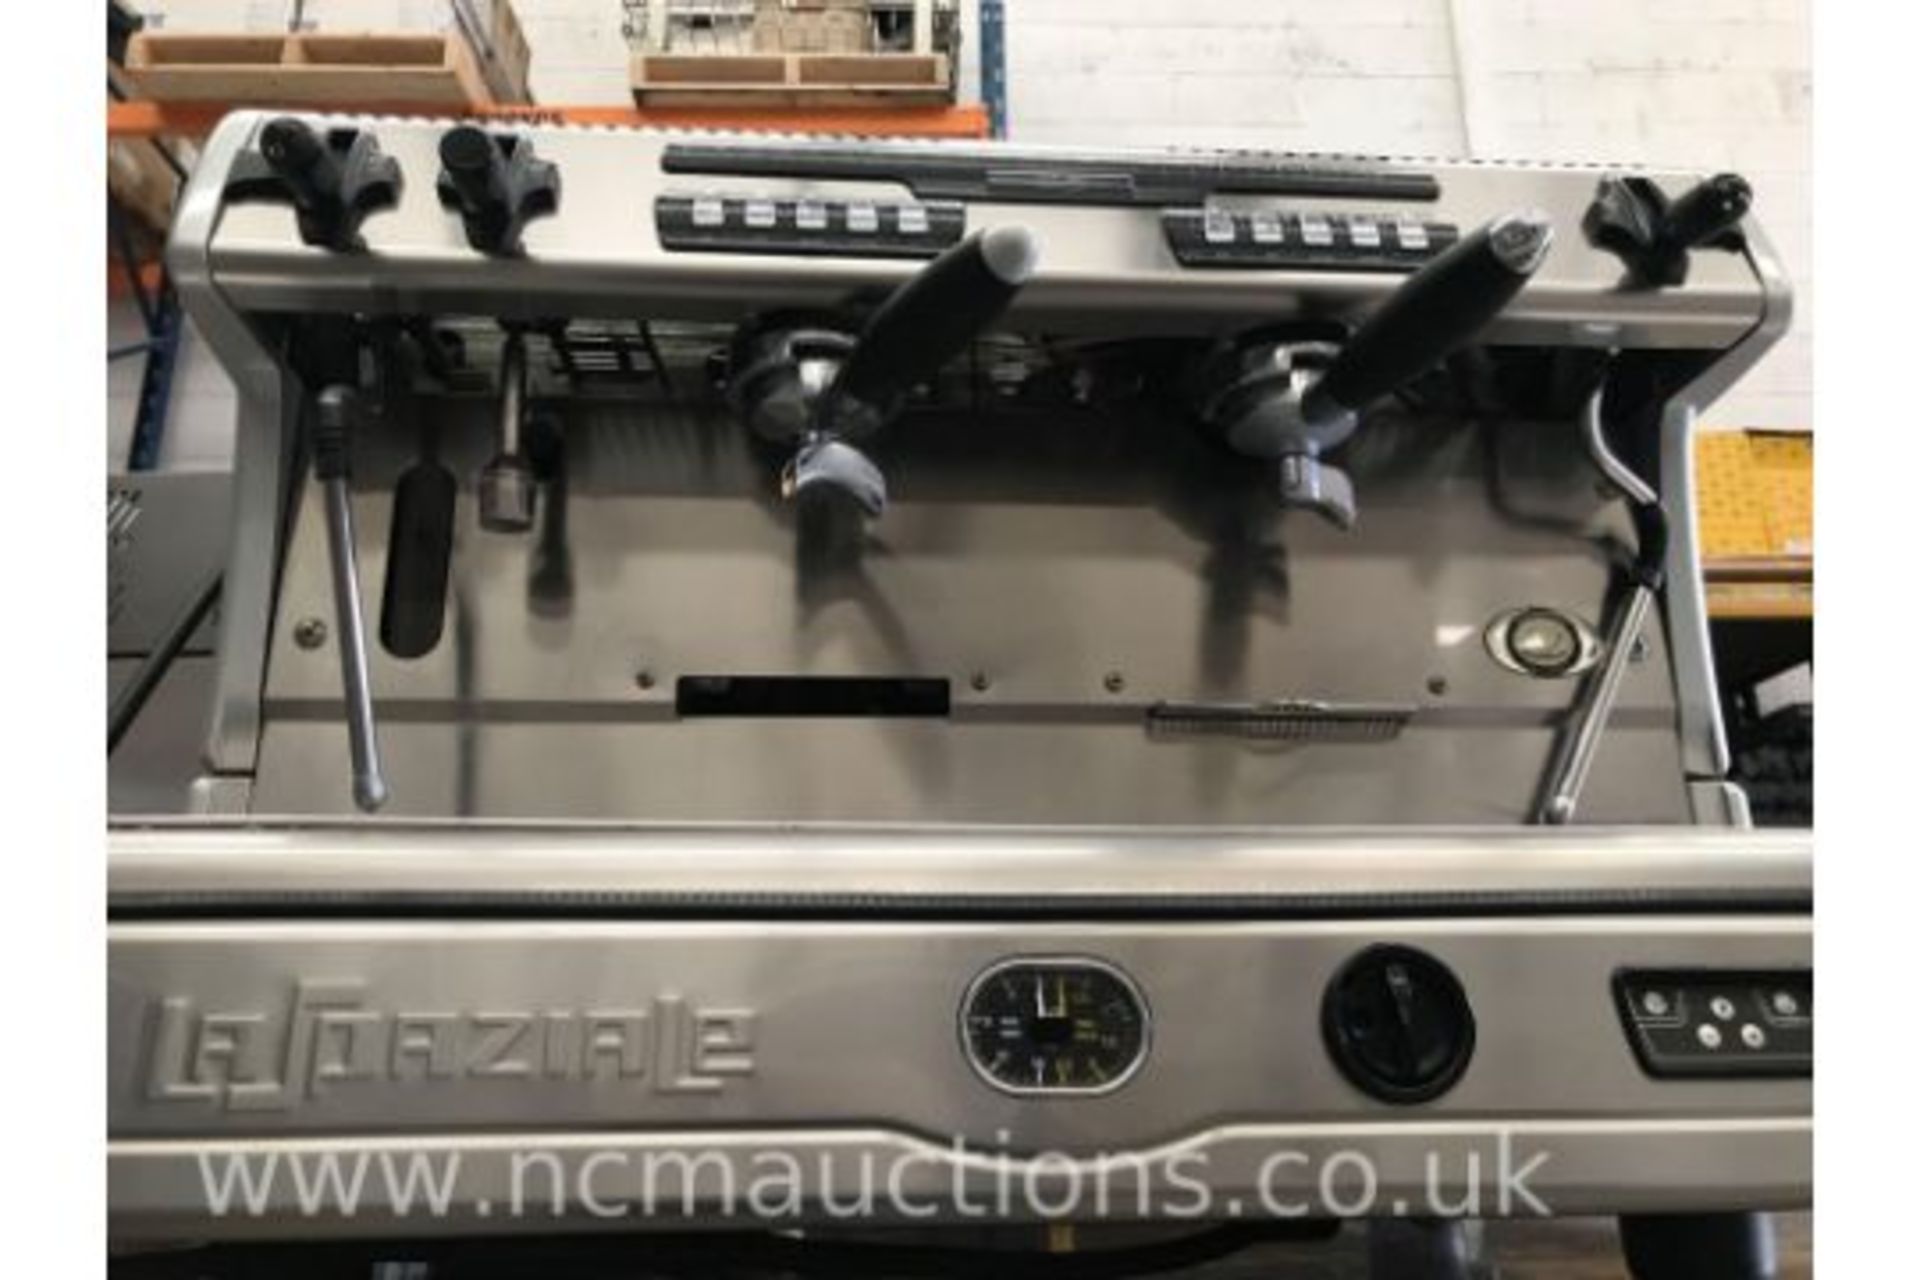 La Spaziale Caffe D'autone S5 Espresso Machine - Image 4 of 4